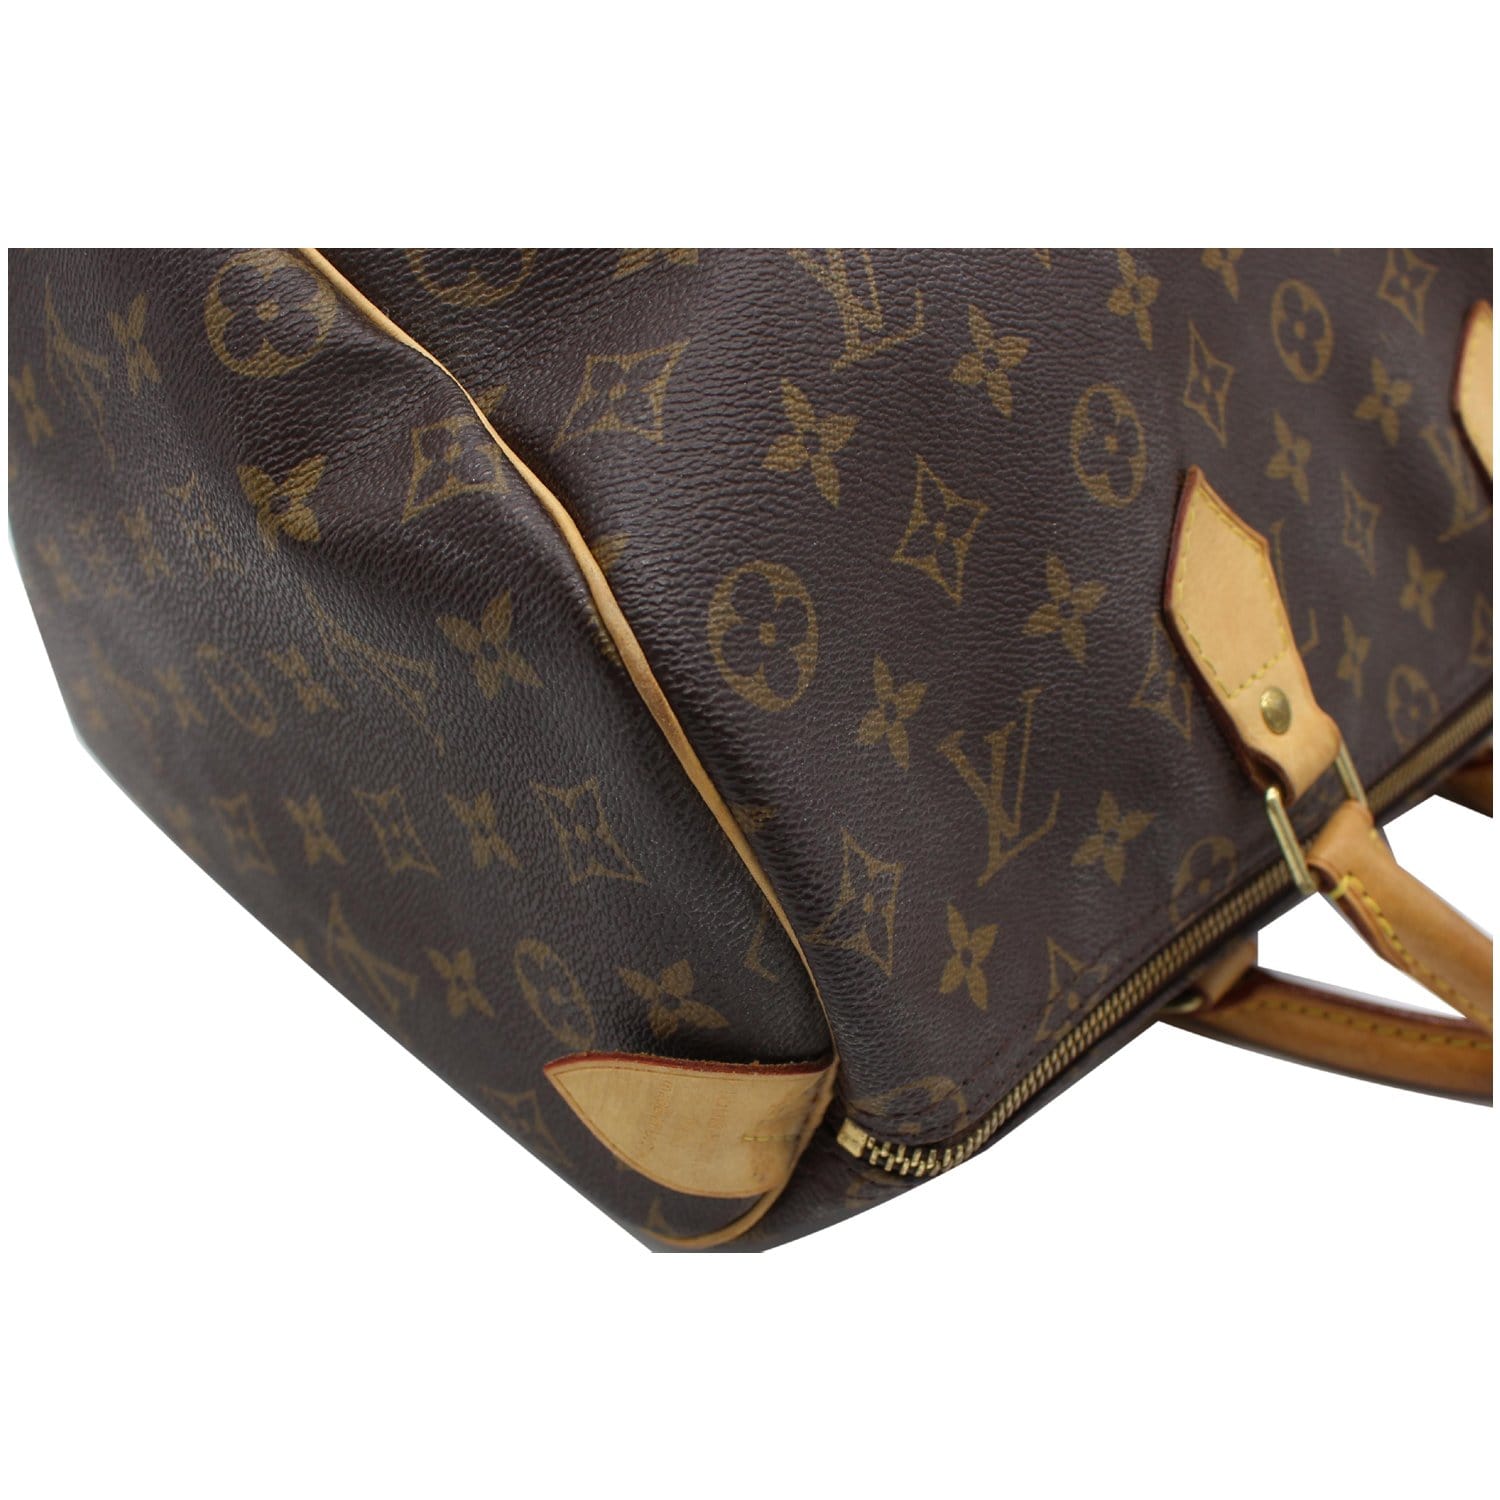 Buy Damaged Louis Vuitton Bags